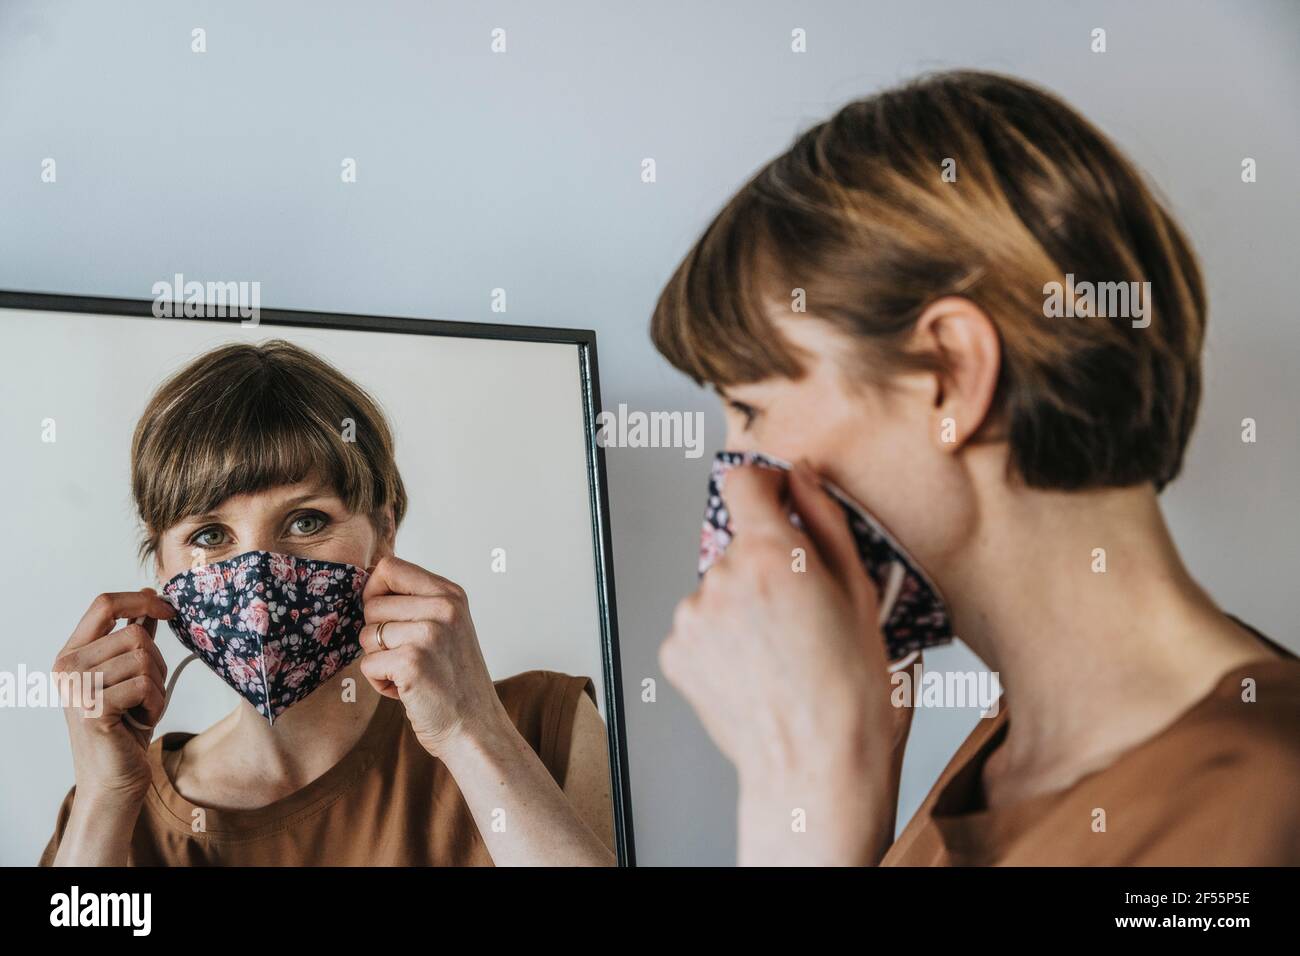 Braunhaarige Frau, die beim Blick ins Gesicht eine schützende Gesichtsmaske trägt Spiegel während einer Pandemie Stockfoto